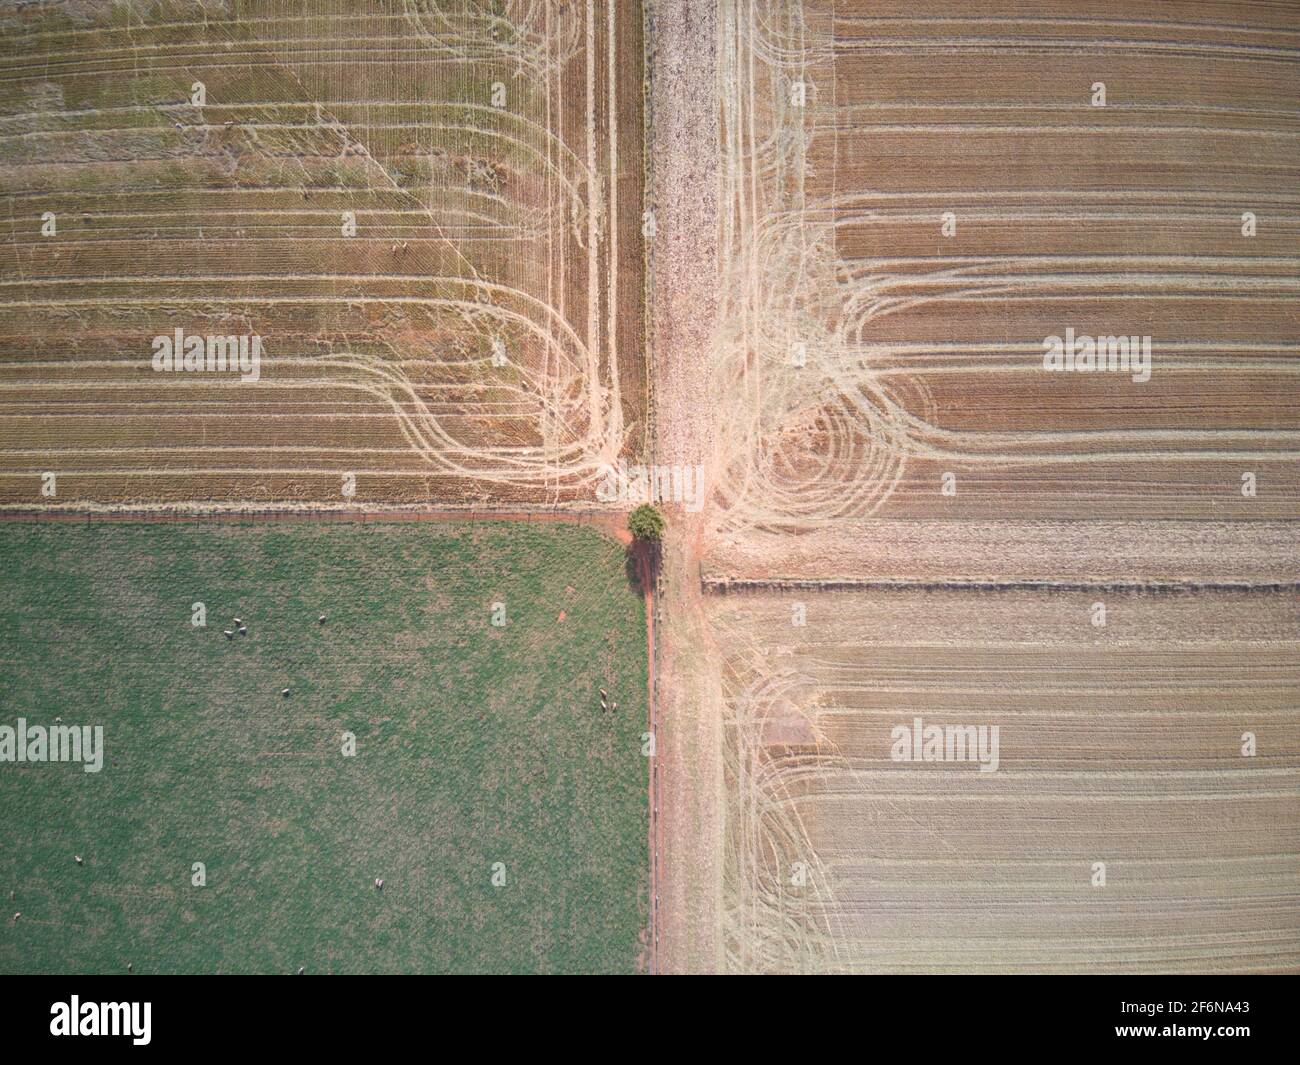 Terra di agricoltura aerea, colture agricole con modelli e piste con sfondo verde e marrone, Victoria, Australia. Foto Stock